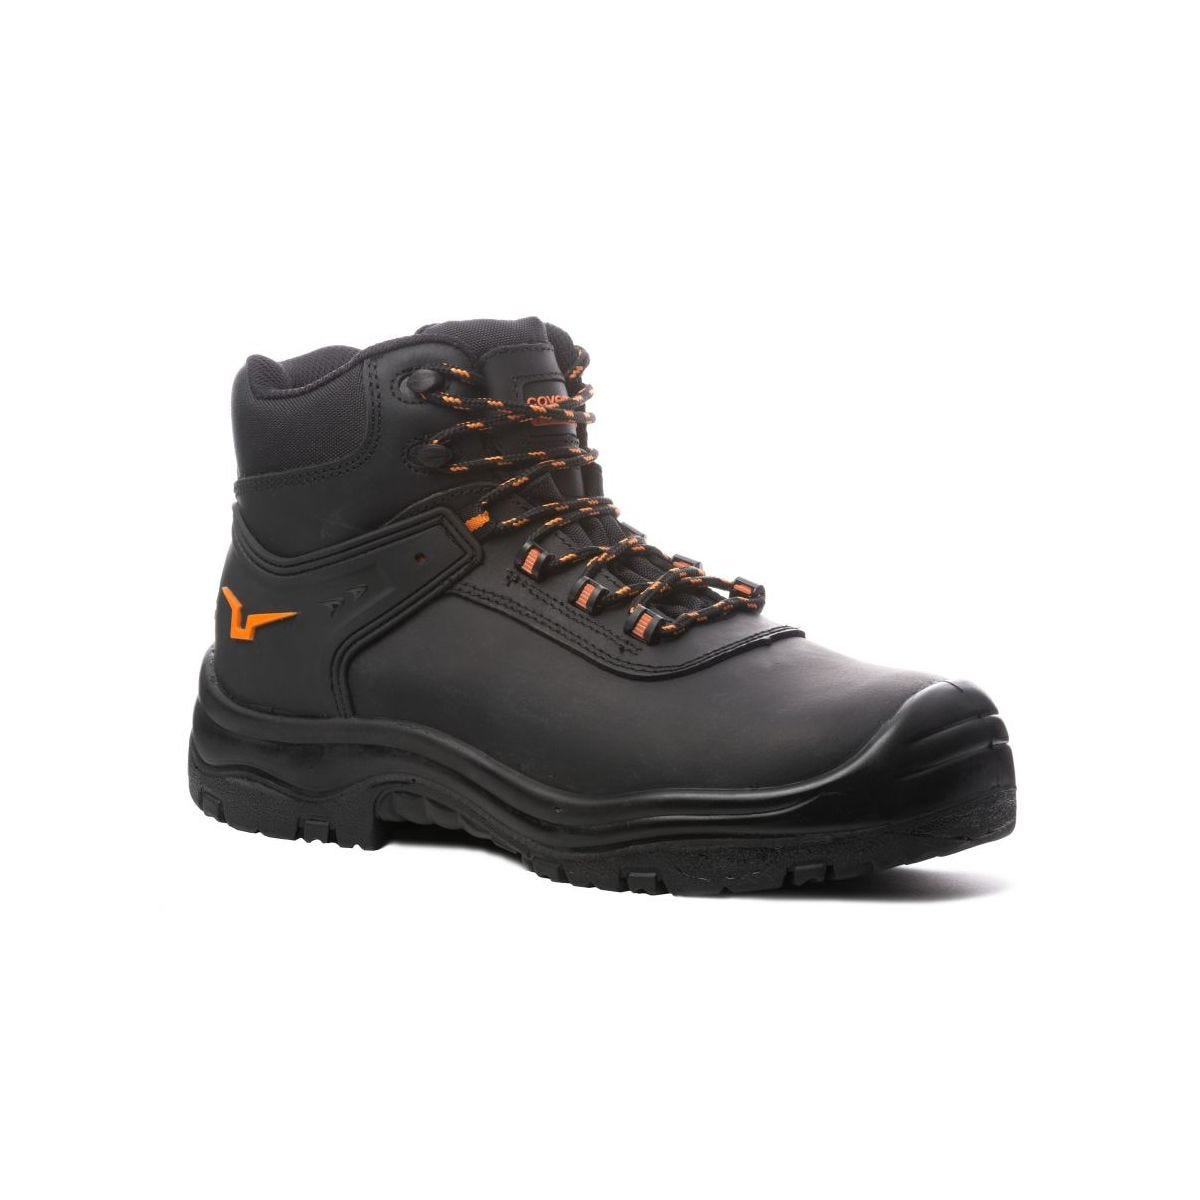 Chaussures de sécurité hautes S3 SRC OPAL composite Noir - Coverguard - Taille 43 0